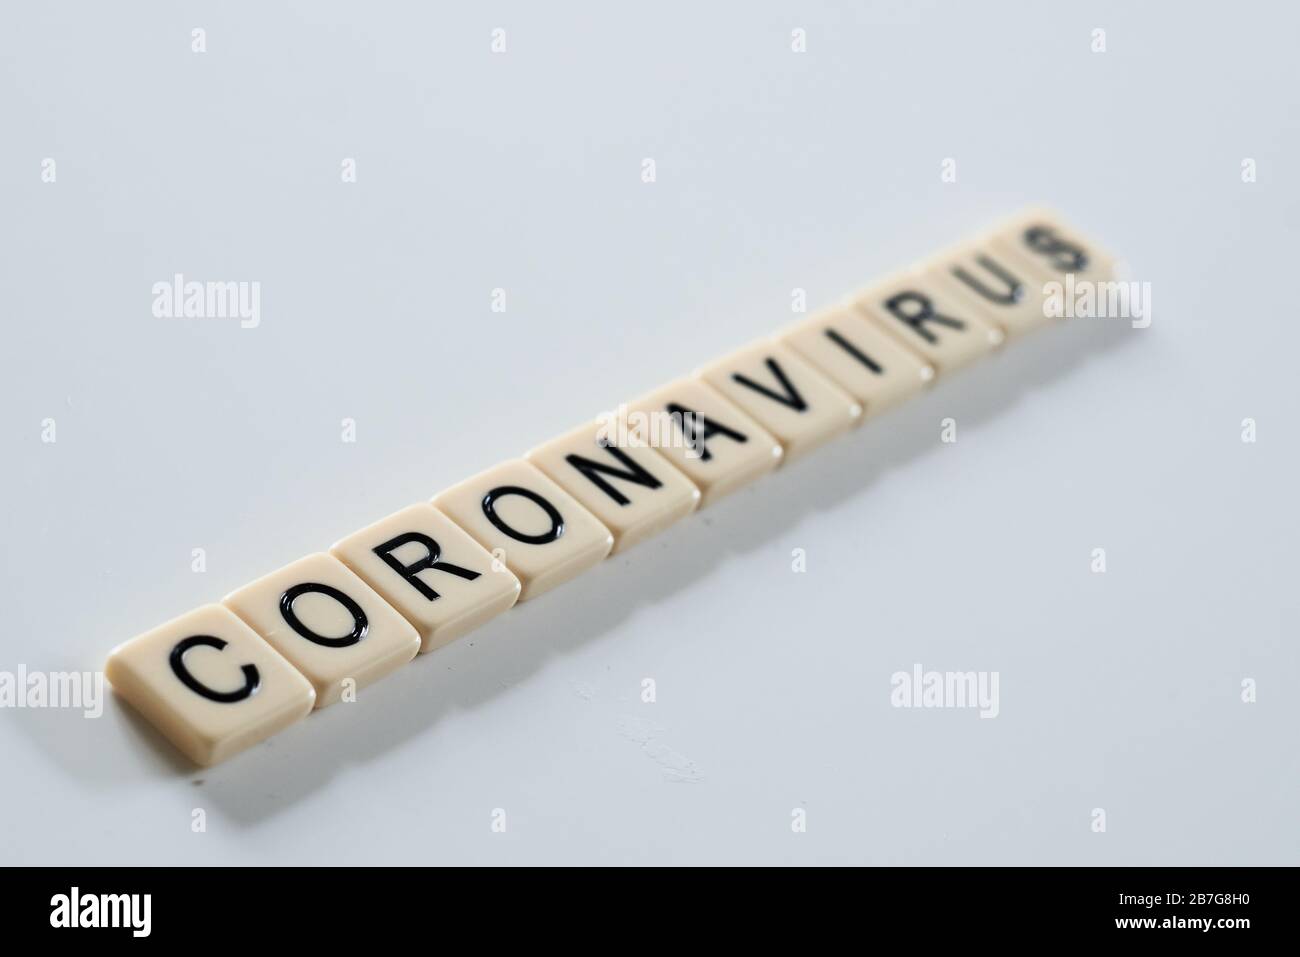 Coronavirus covid-19 spelt on scrabble tiles on white background Stock Photo